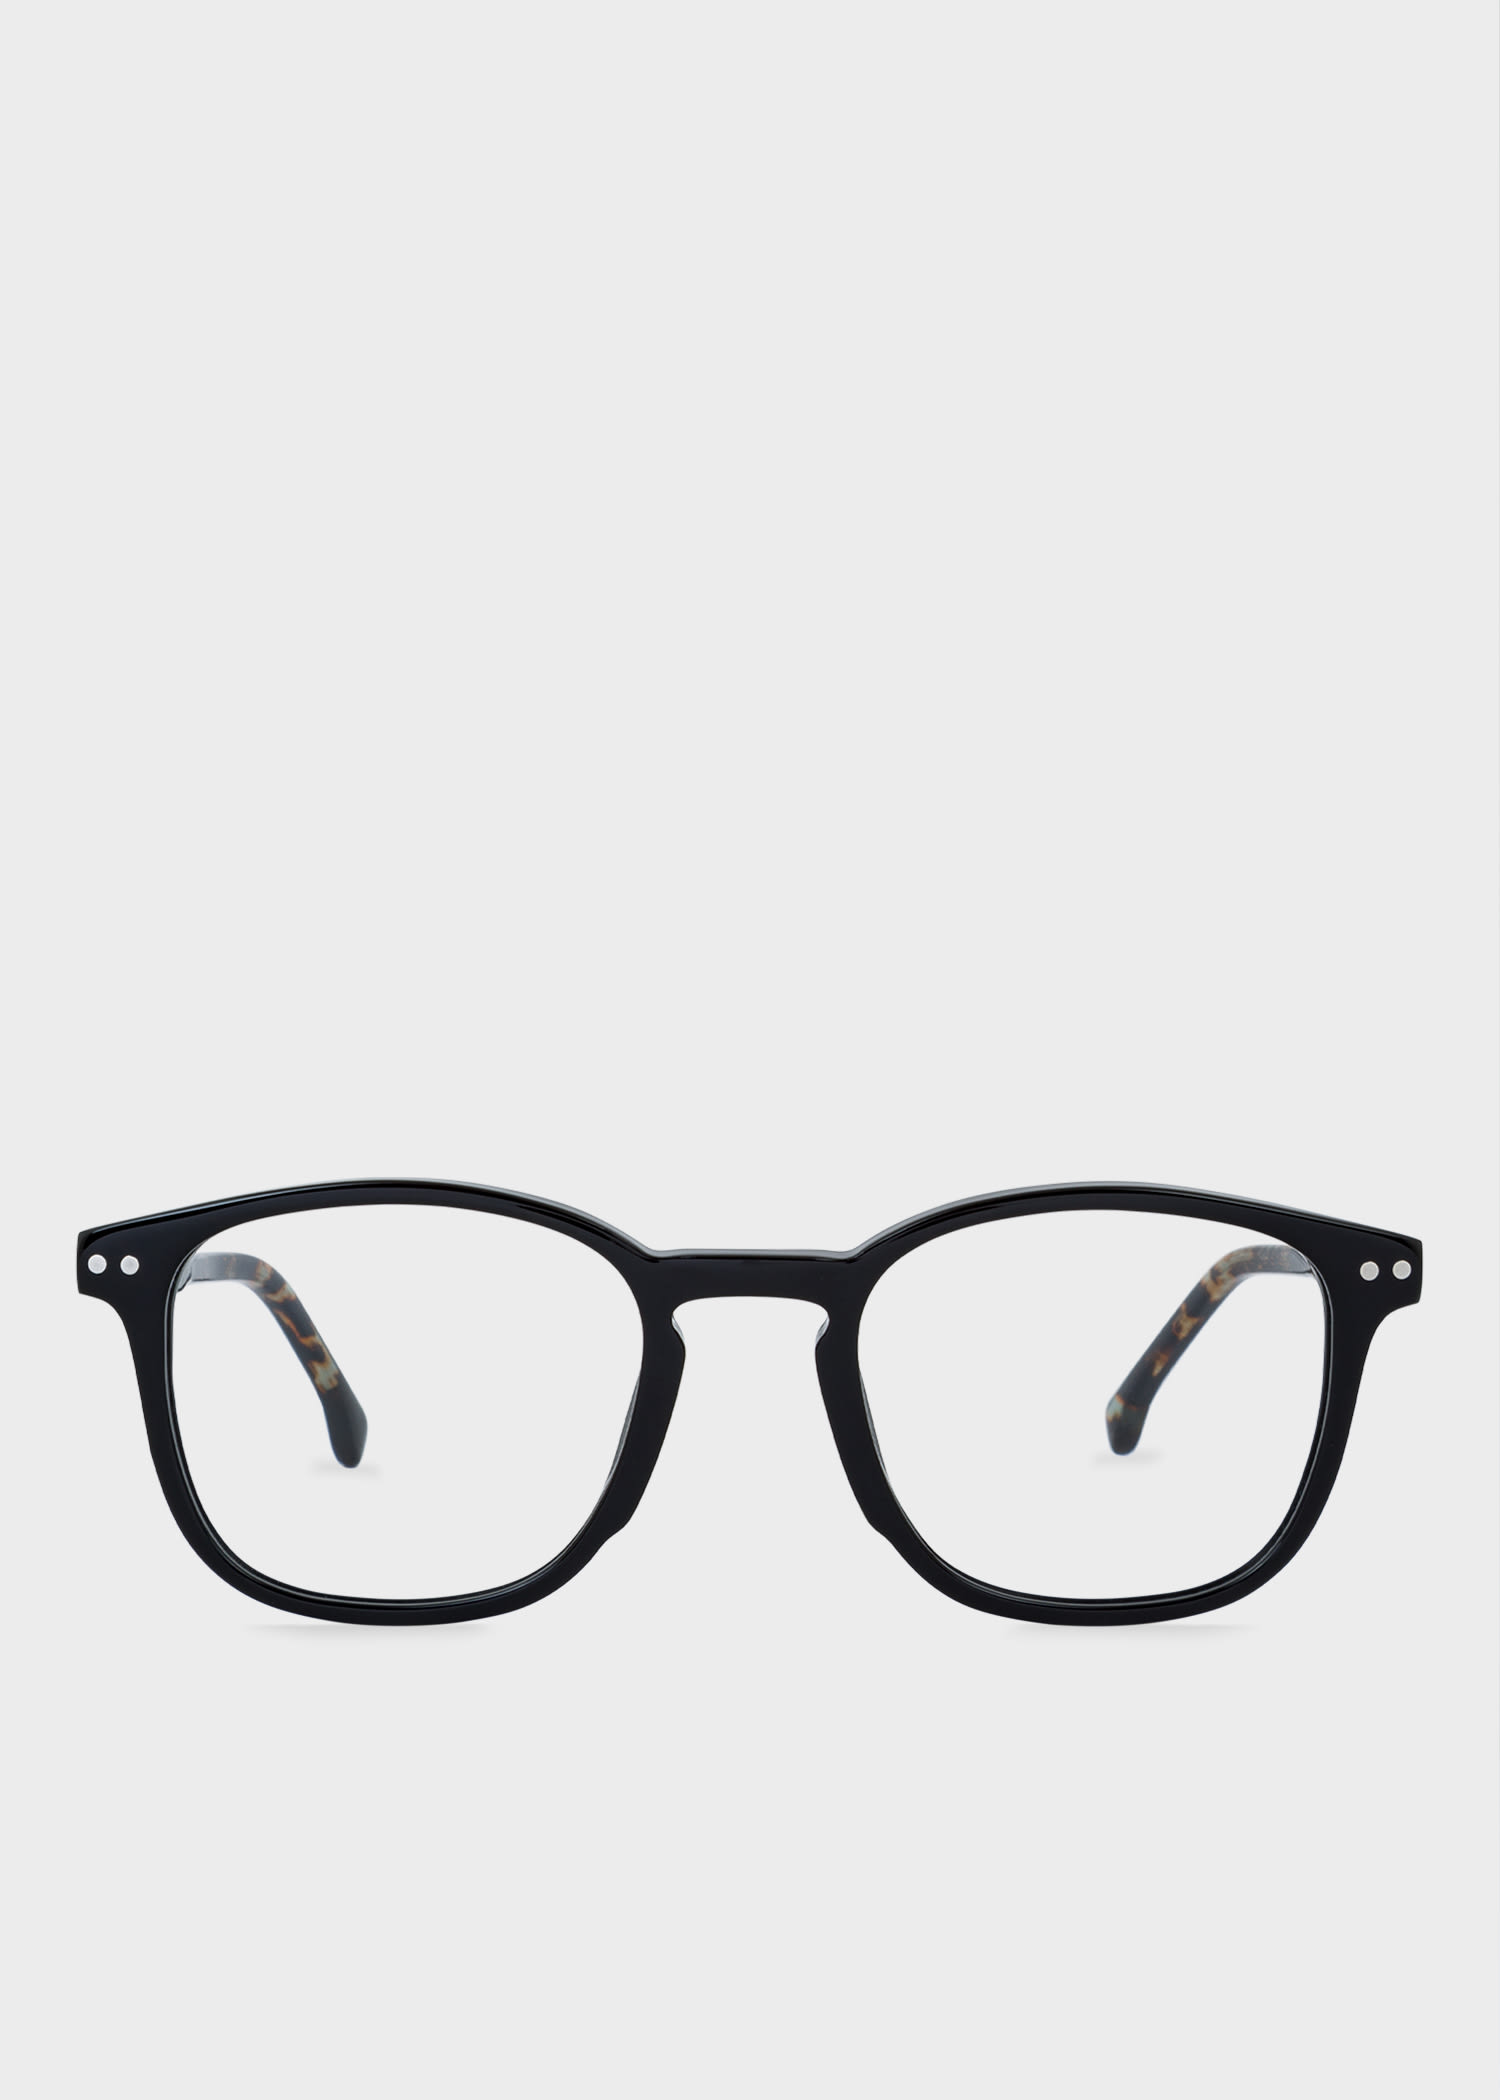 Inform sleep self Designer Men's & Women's Glasses & Sunglasses - Paul Smith US